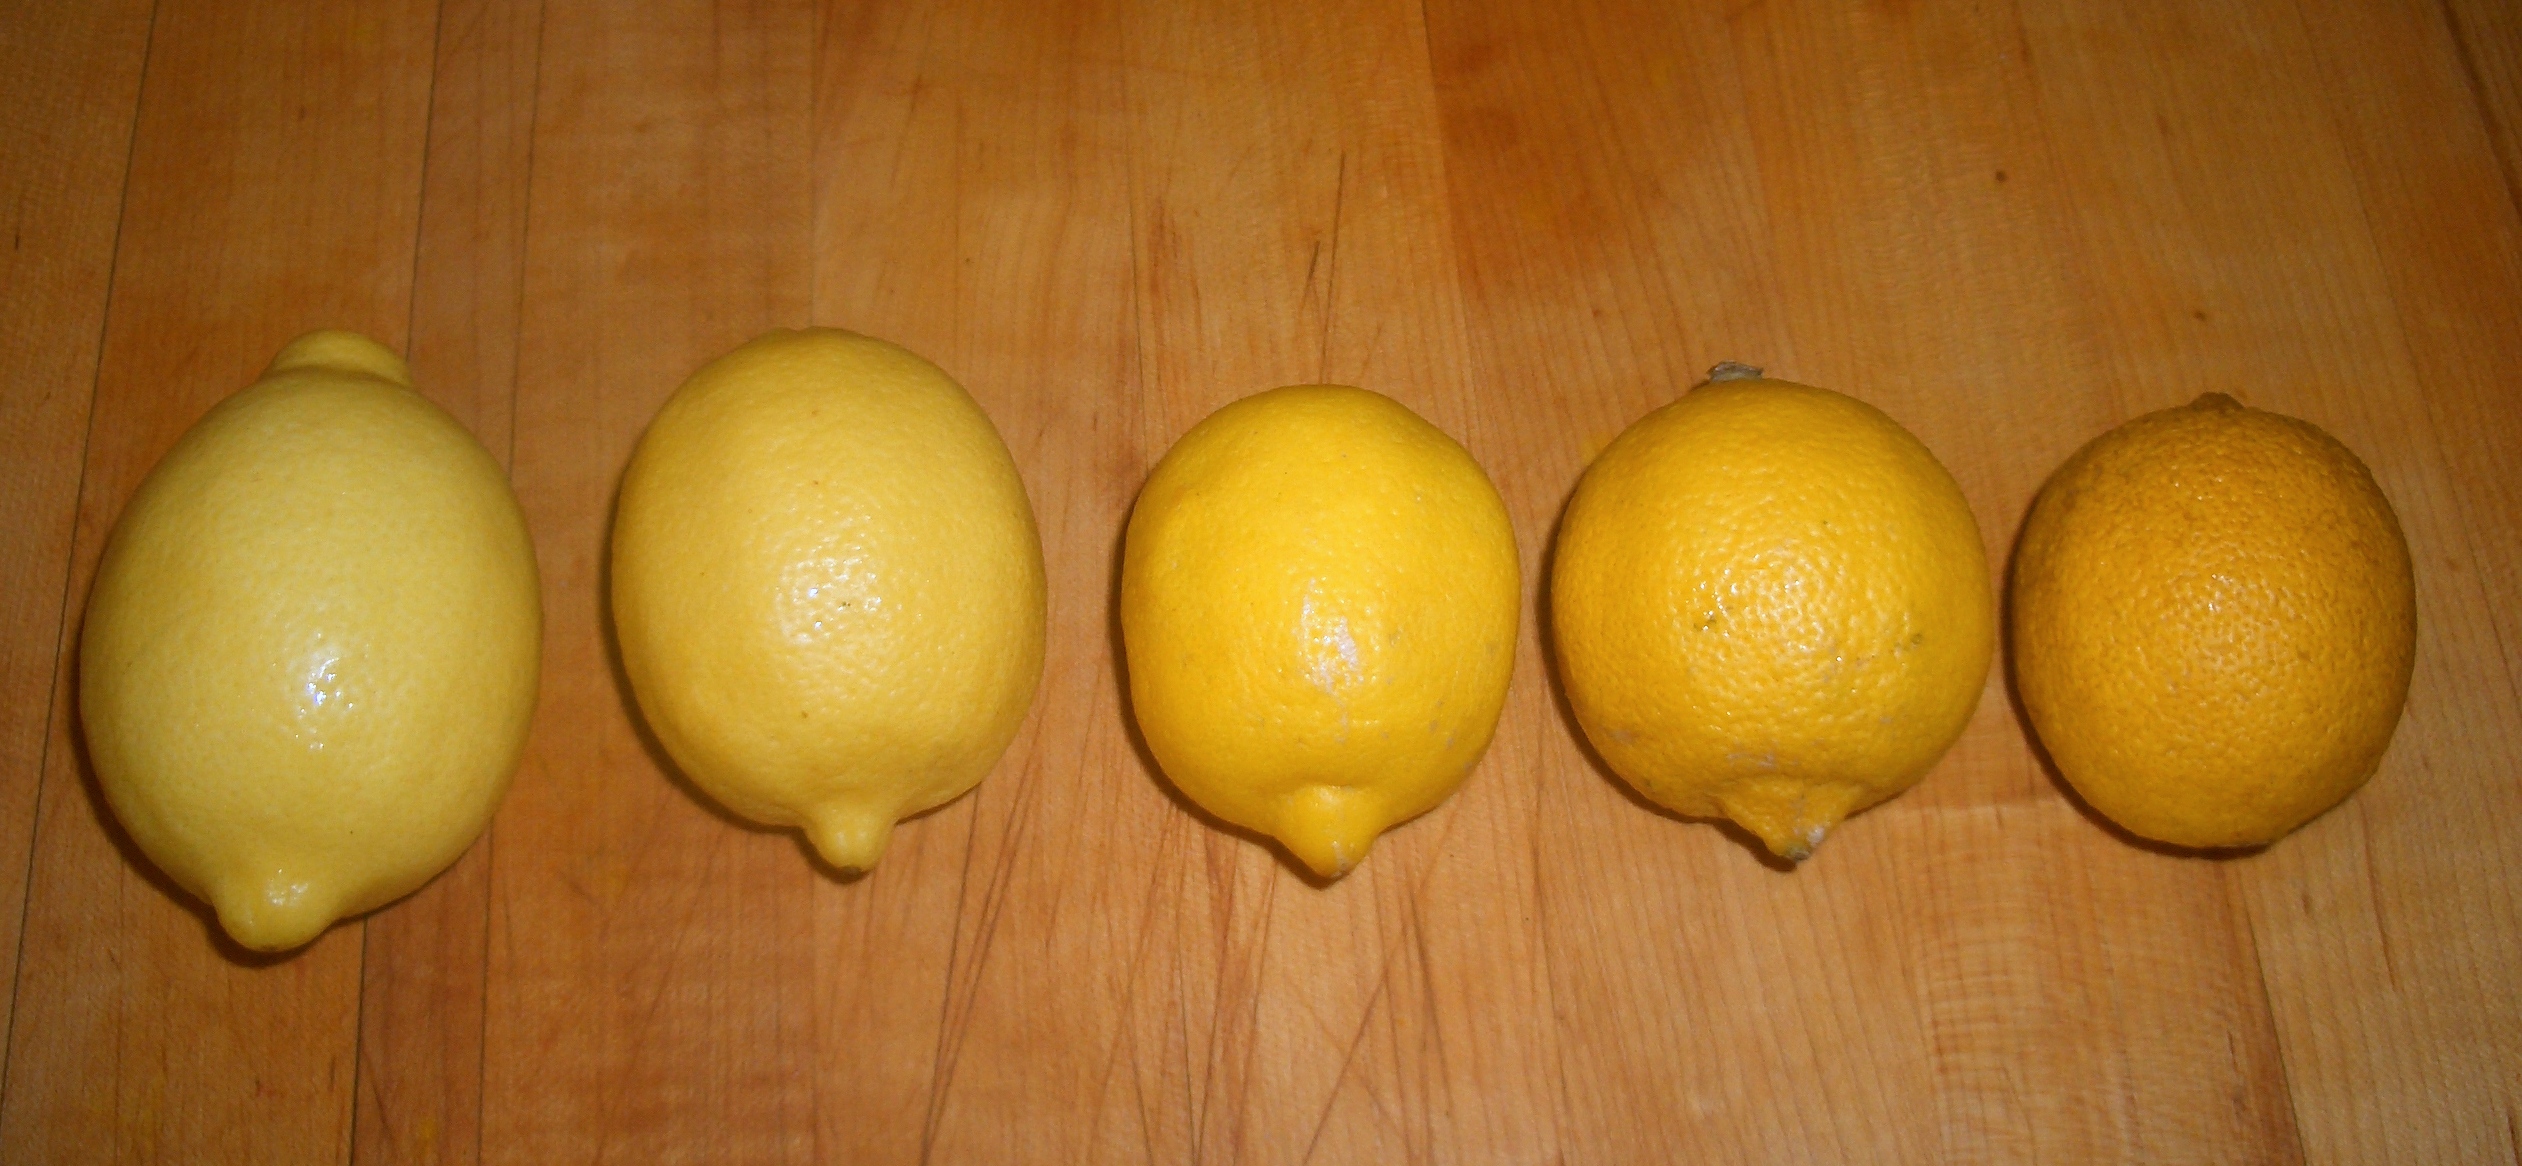 Choosing The Juiciest Lemons | MASTERING PALEO